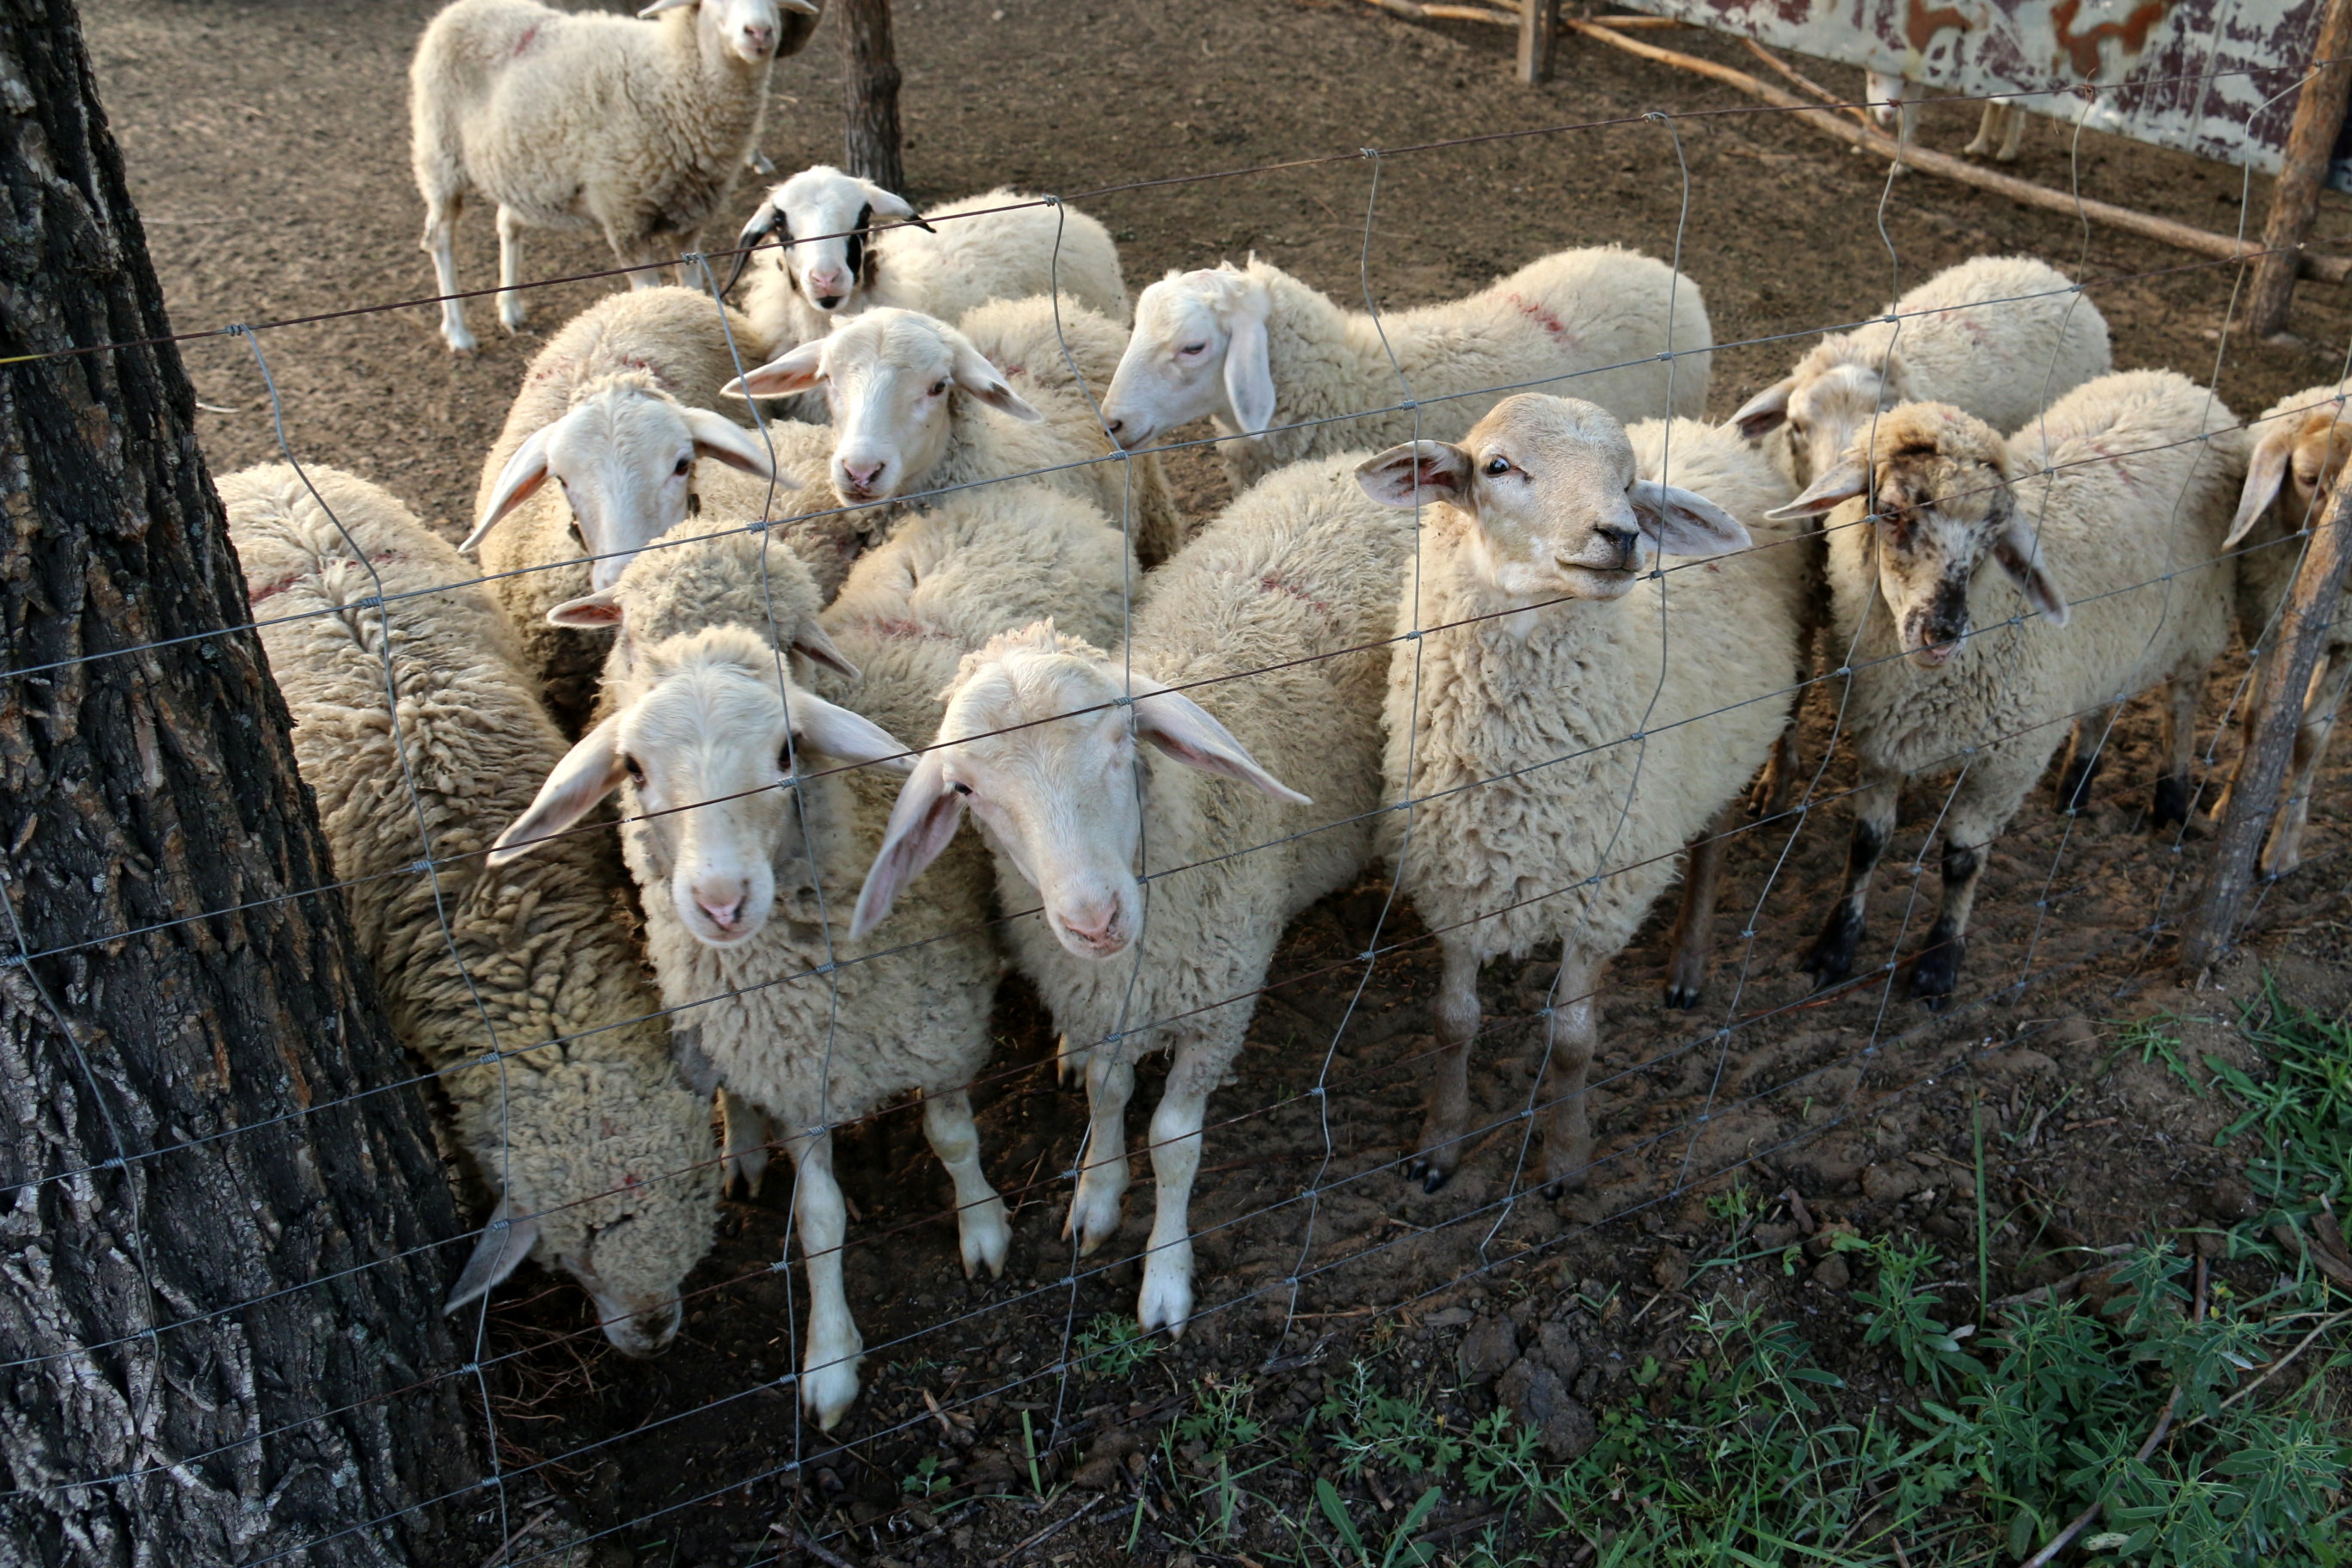 羊 羊圈 农场院子 - Pixabay上的免费照片 - Pixabay